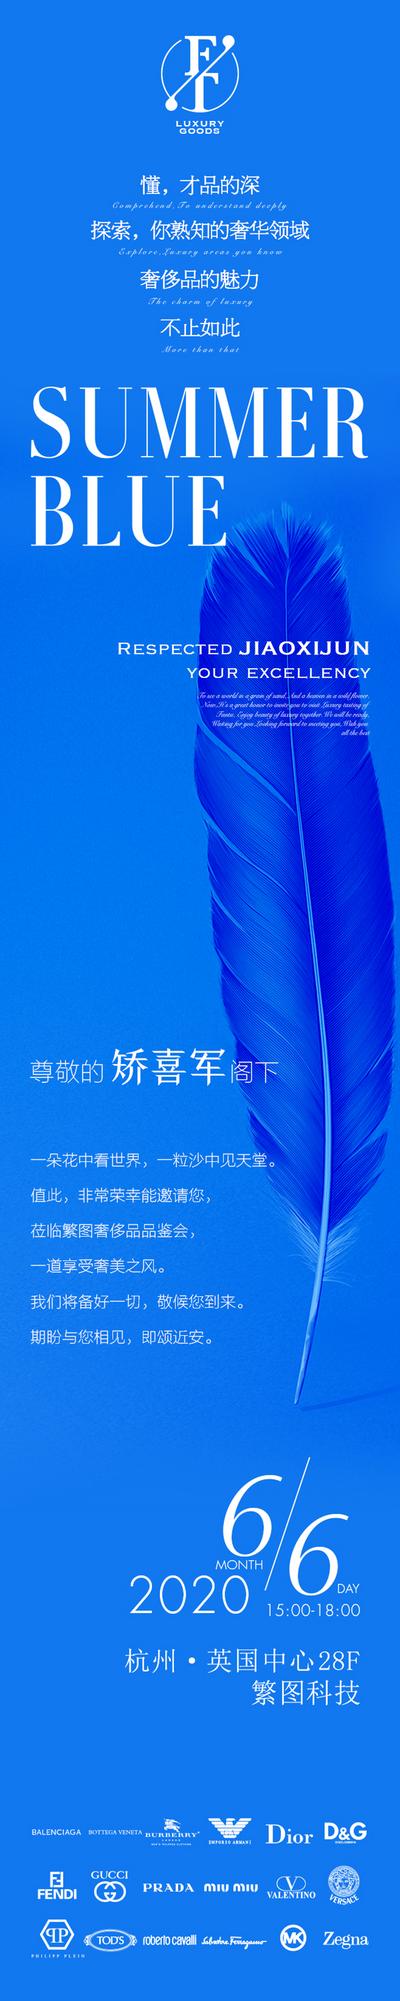 【南门网】海报 长图 邀请函 奢侈品 沙龙 简约 大气 蓝色 